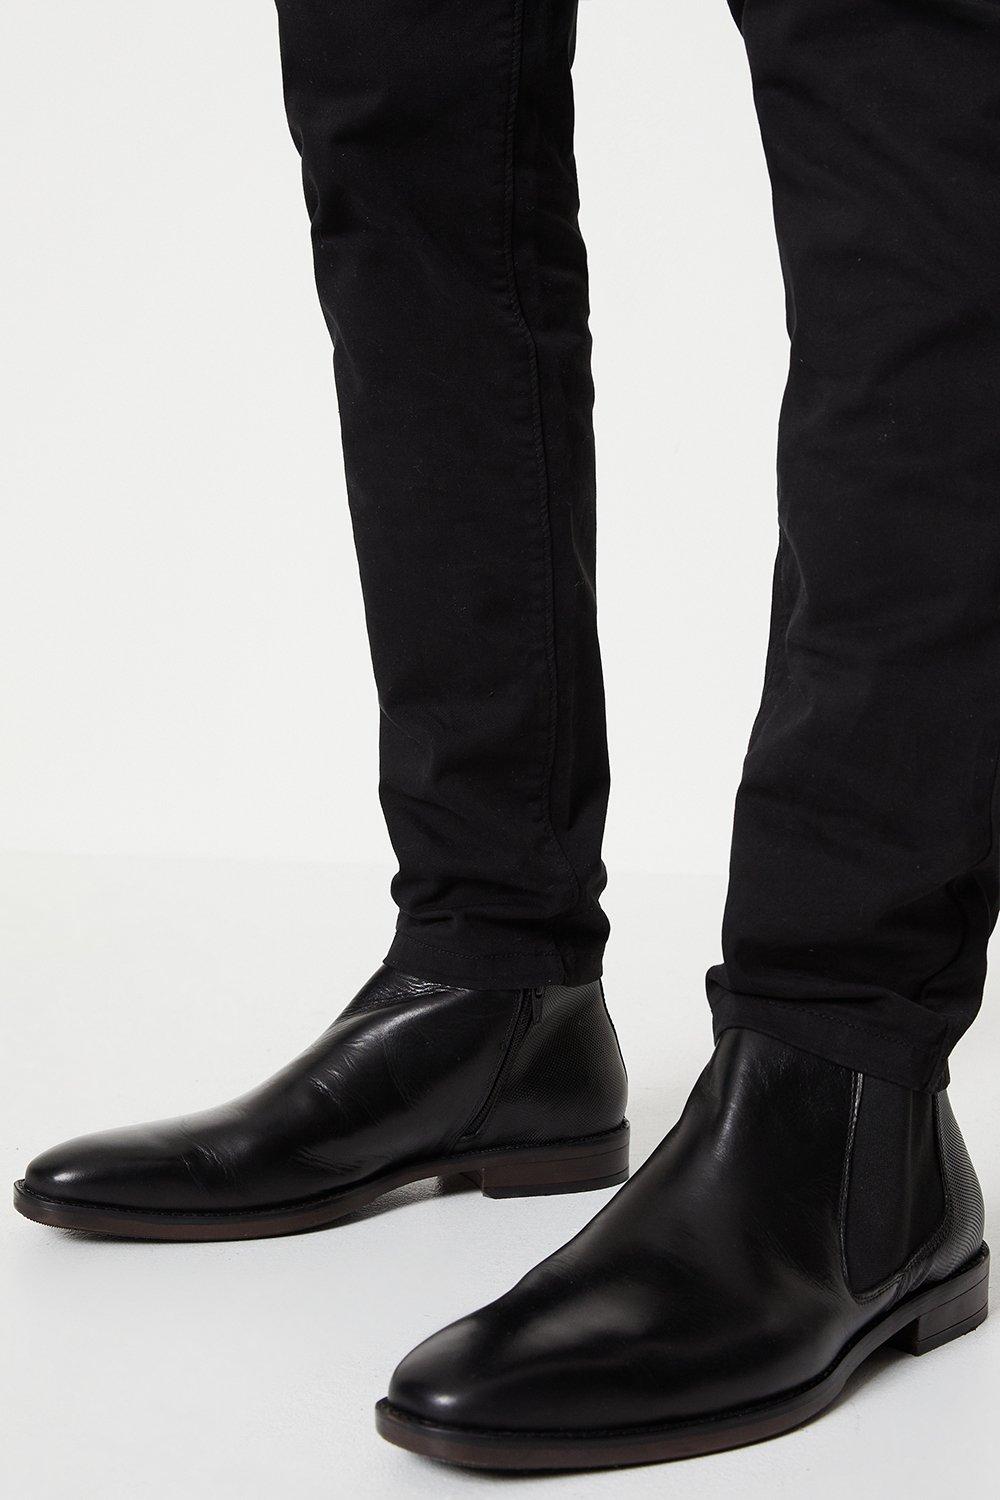 Кожаные ботинки челси с миндалевидным носком Bradley Burton, черный черные кожаные ботинки челси givenchy